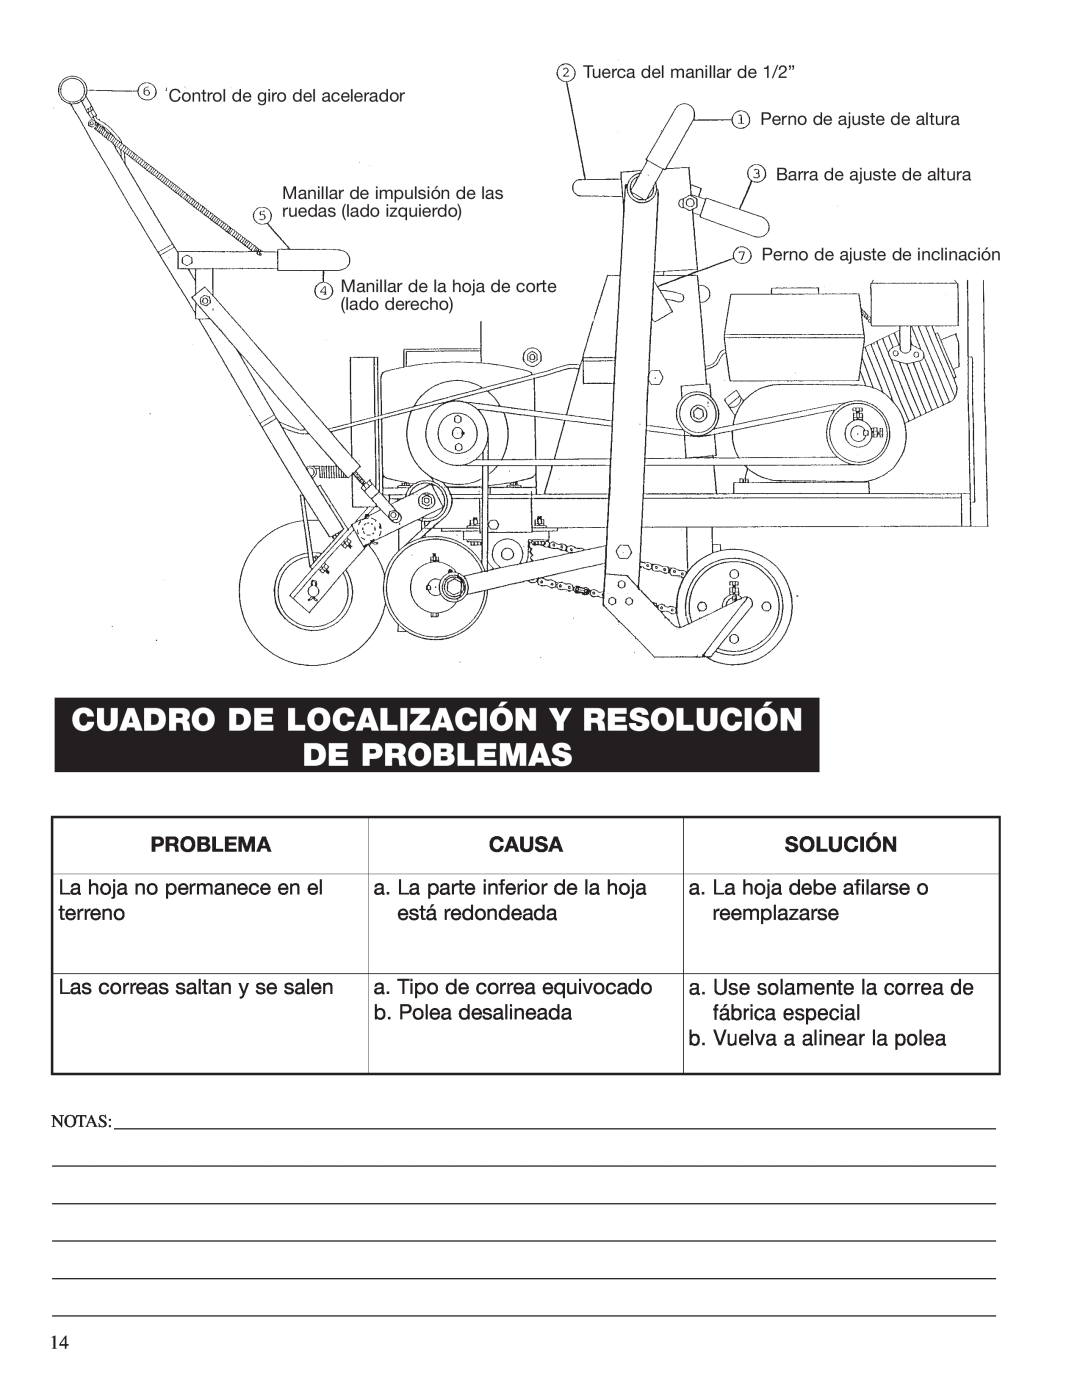 Classen SC-16/5.5 Cuadro De Localización Y Resolución De Problemas, Causa, Solución, La hoja no permanece en el, terreno 